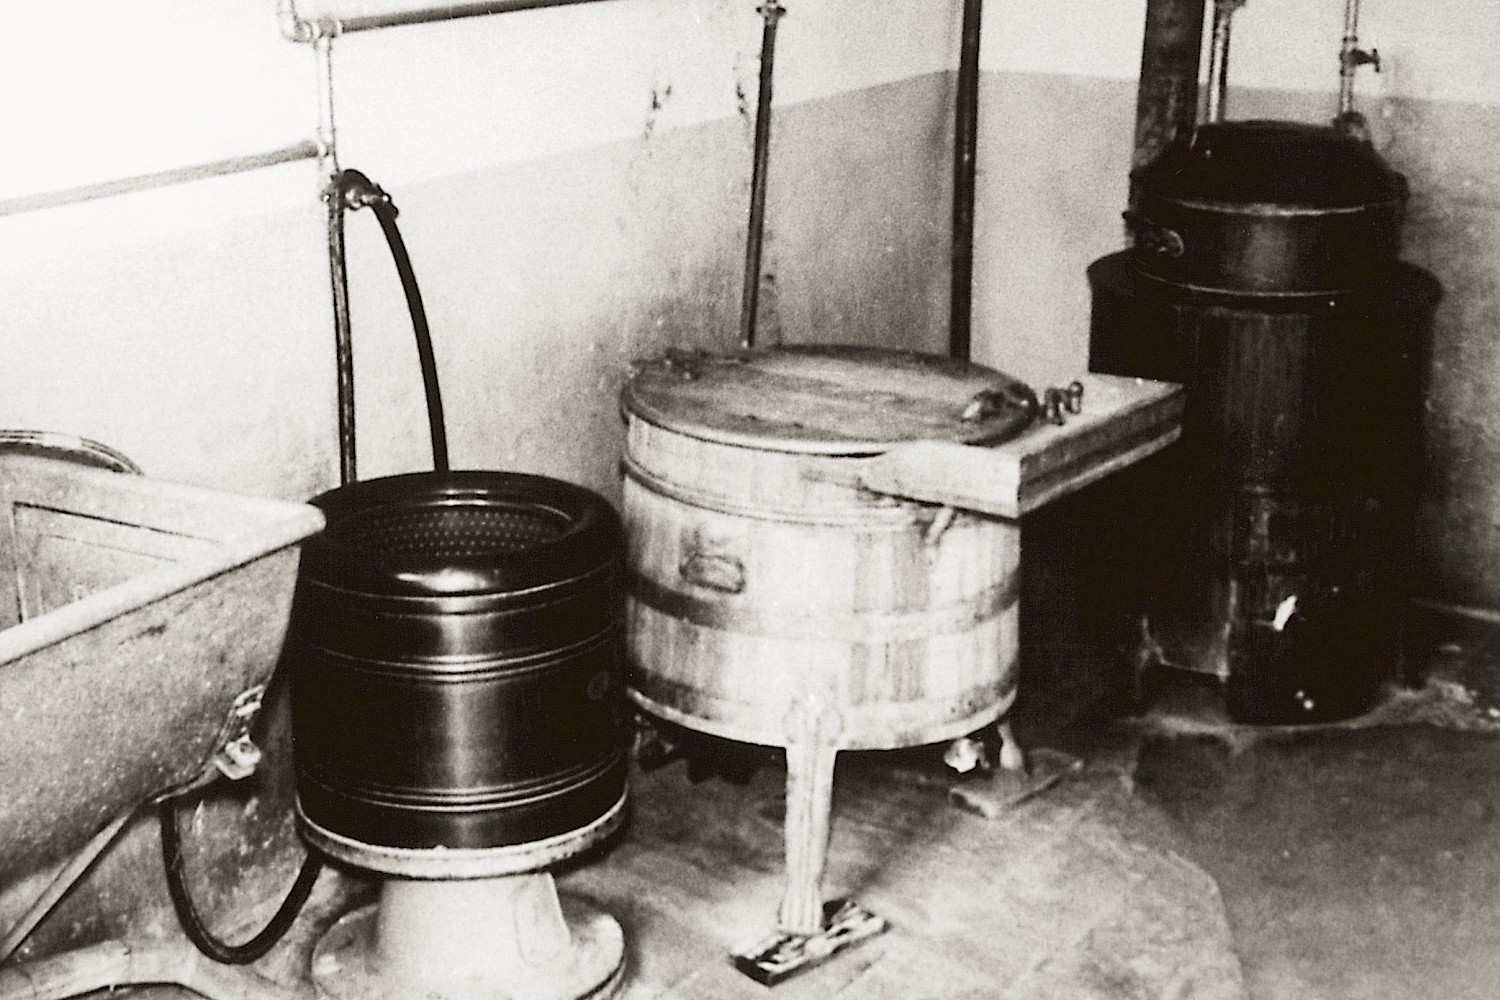 Waschküche von anno dazumal. Die ersten vollautomatischen Waschmaschinen wurden 1958 aufgestellt.